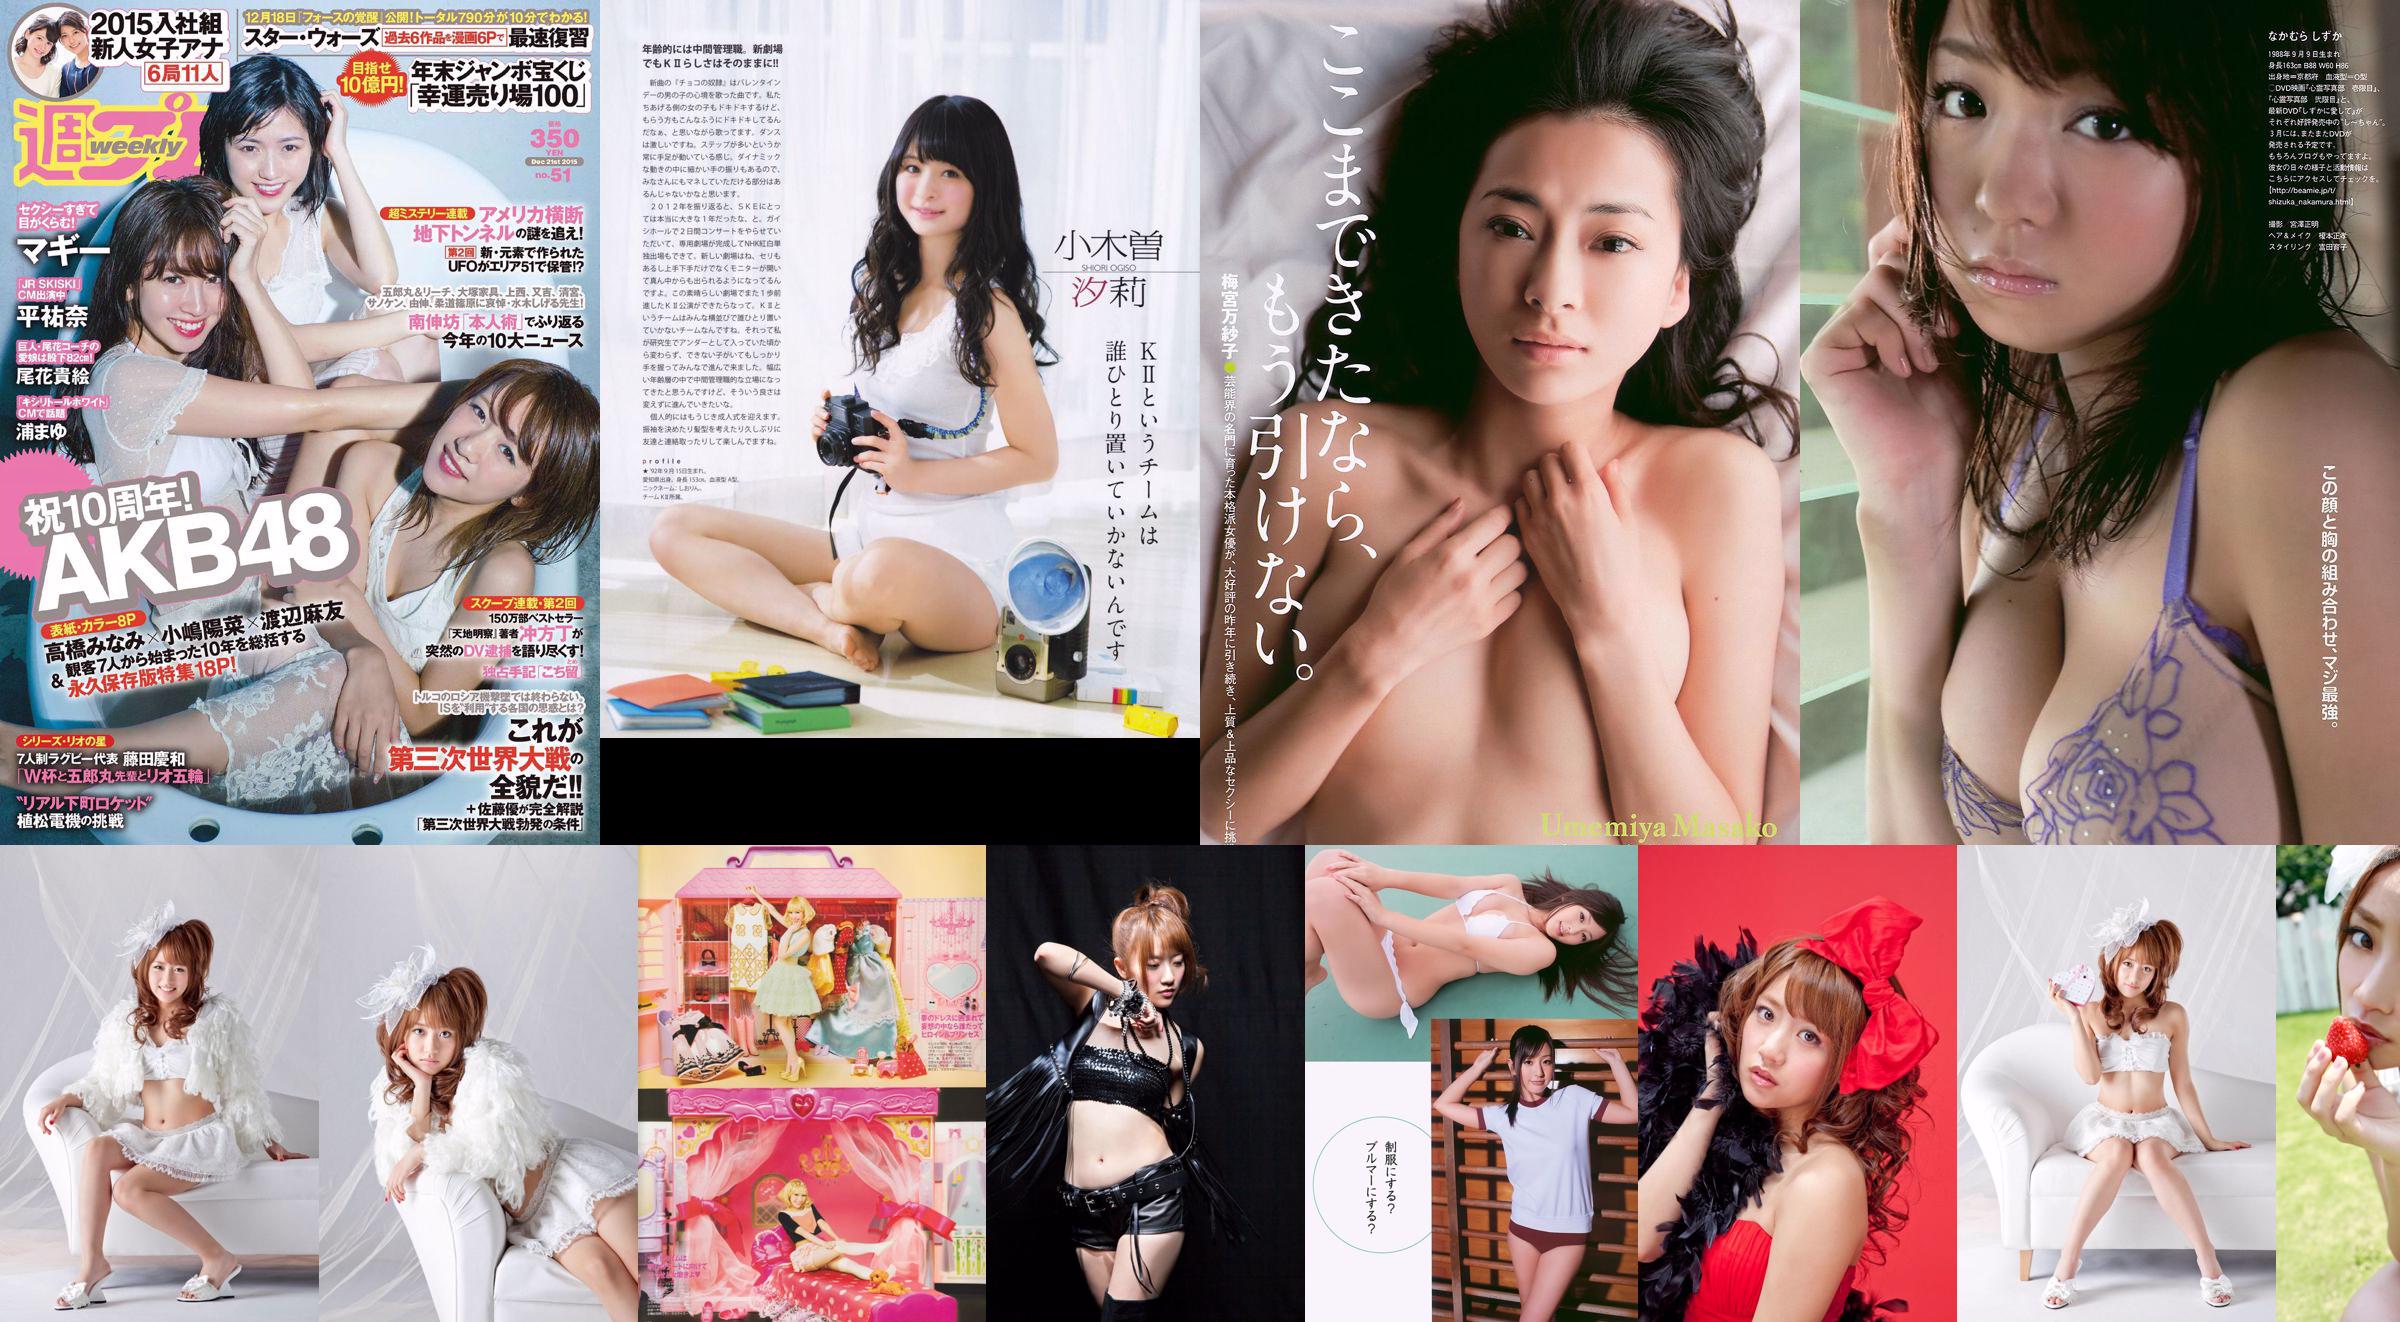 [นิตยสารบอมบ์] 2013 No.02 Takahashi Minami Matsui Jurina Kasai Tomomi Kitahara Riehi Photo magazine No.0bf41d หน้า 1